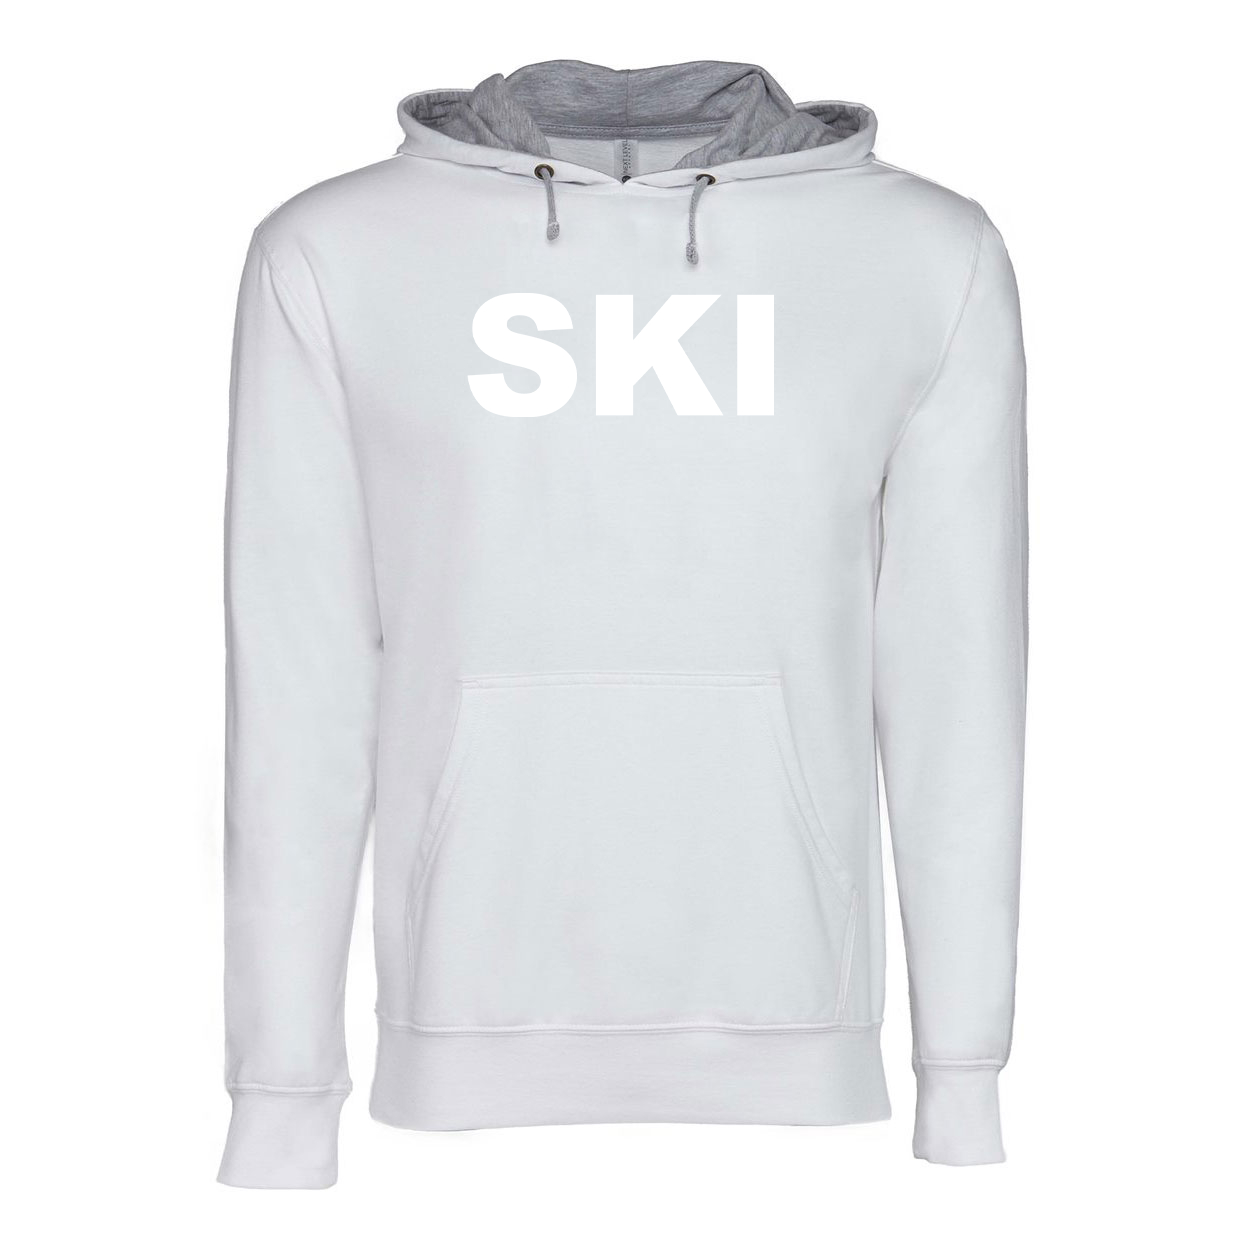 Ski Brand Logo Classic Lightweight Sweatshirt White/Heather Gray 